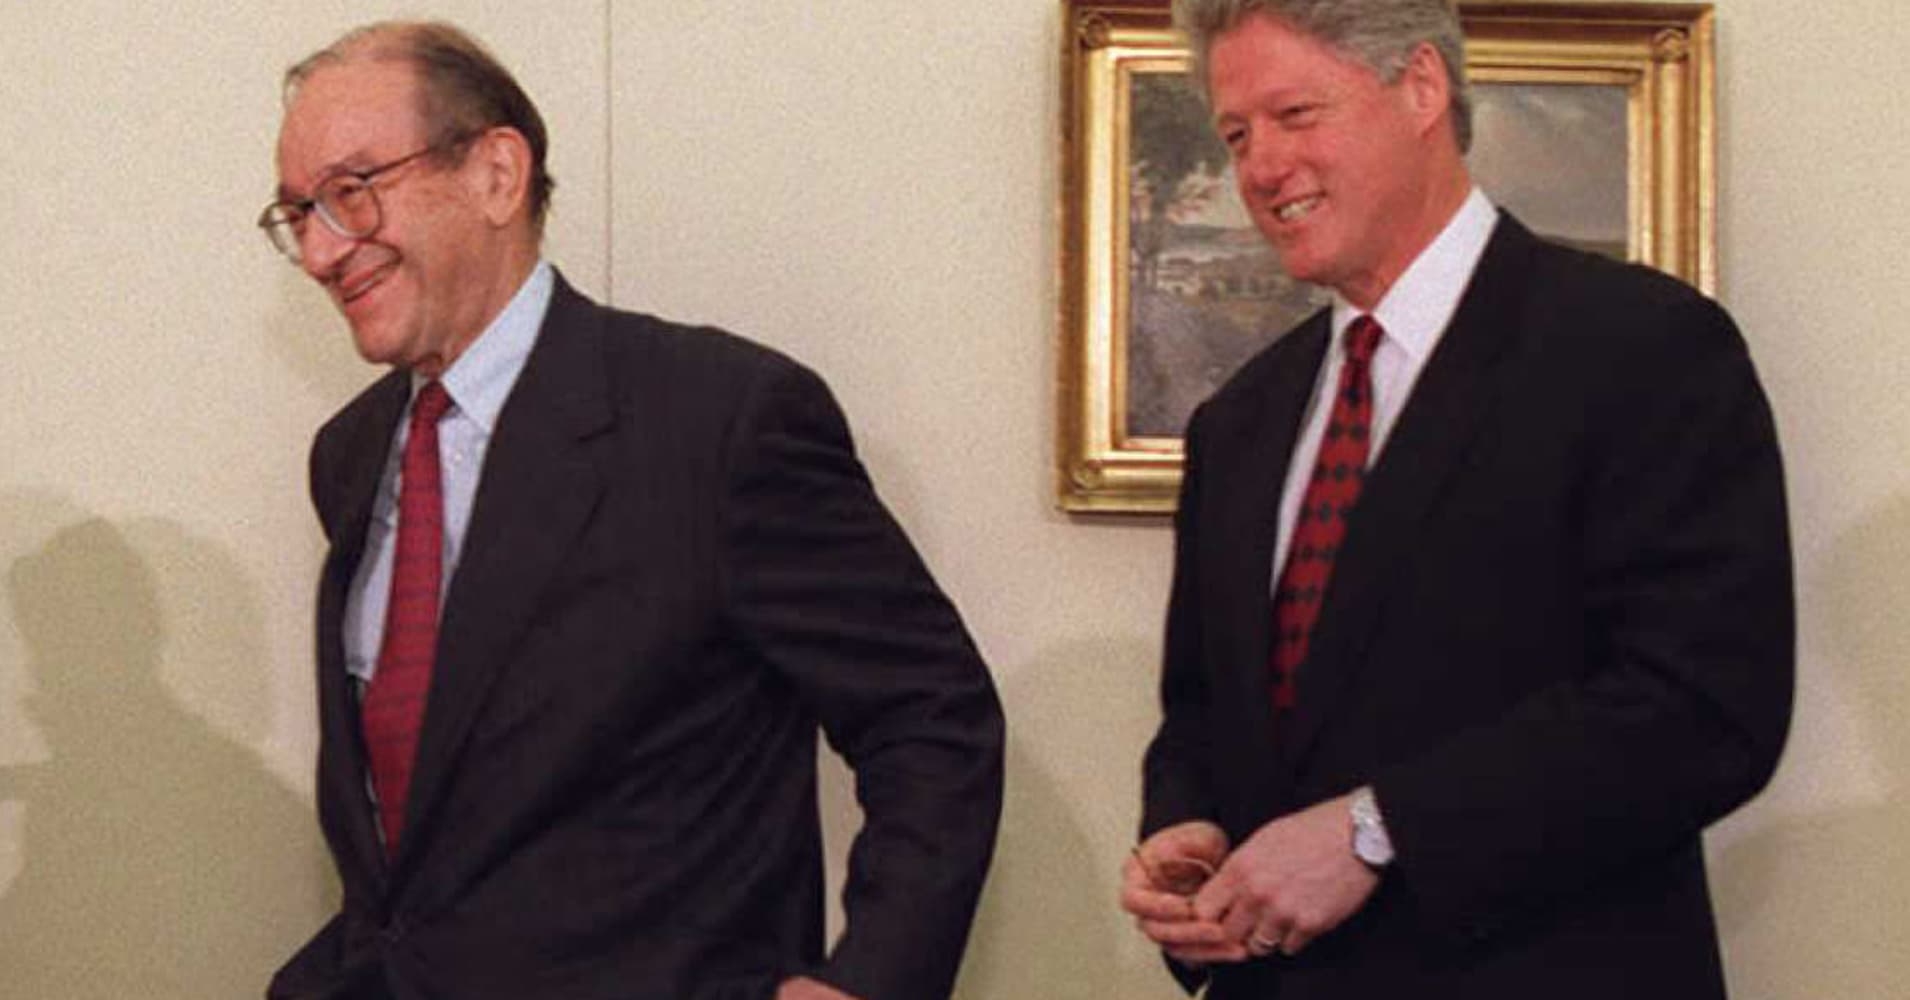 alan greenspan walking next to then-president bill clinton